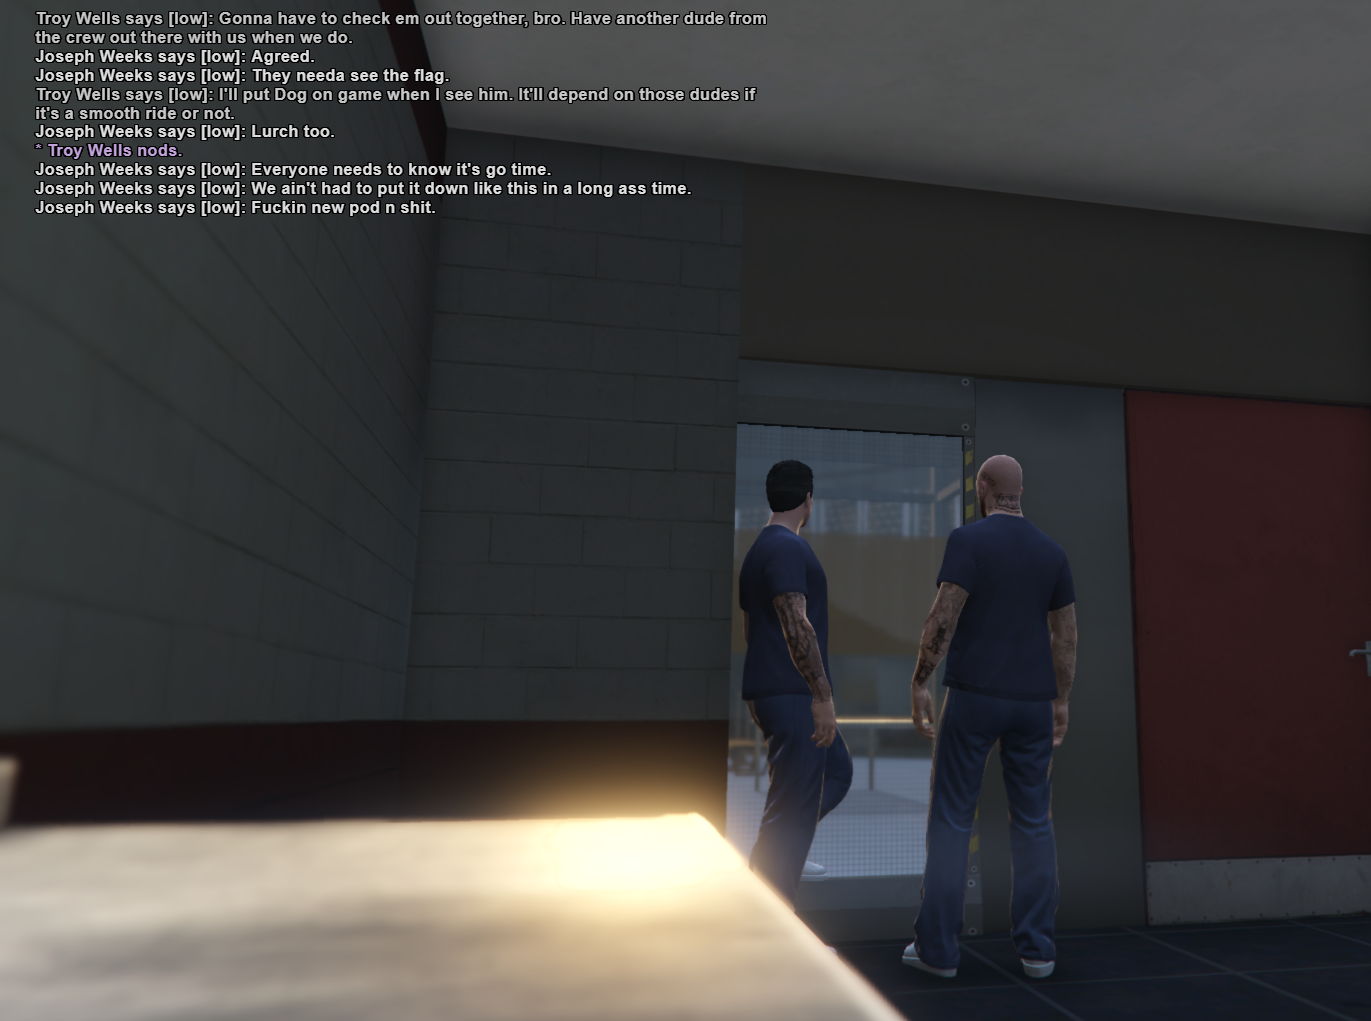 Grand_Theft_Auto_V_Screenshot_2020.01.23_-_17.19.26_copy.png